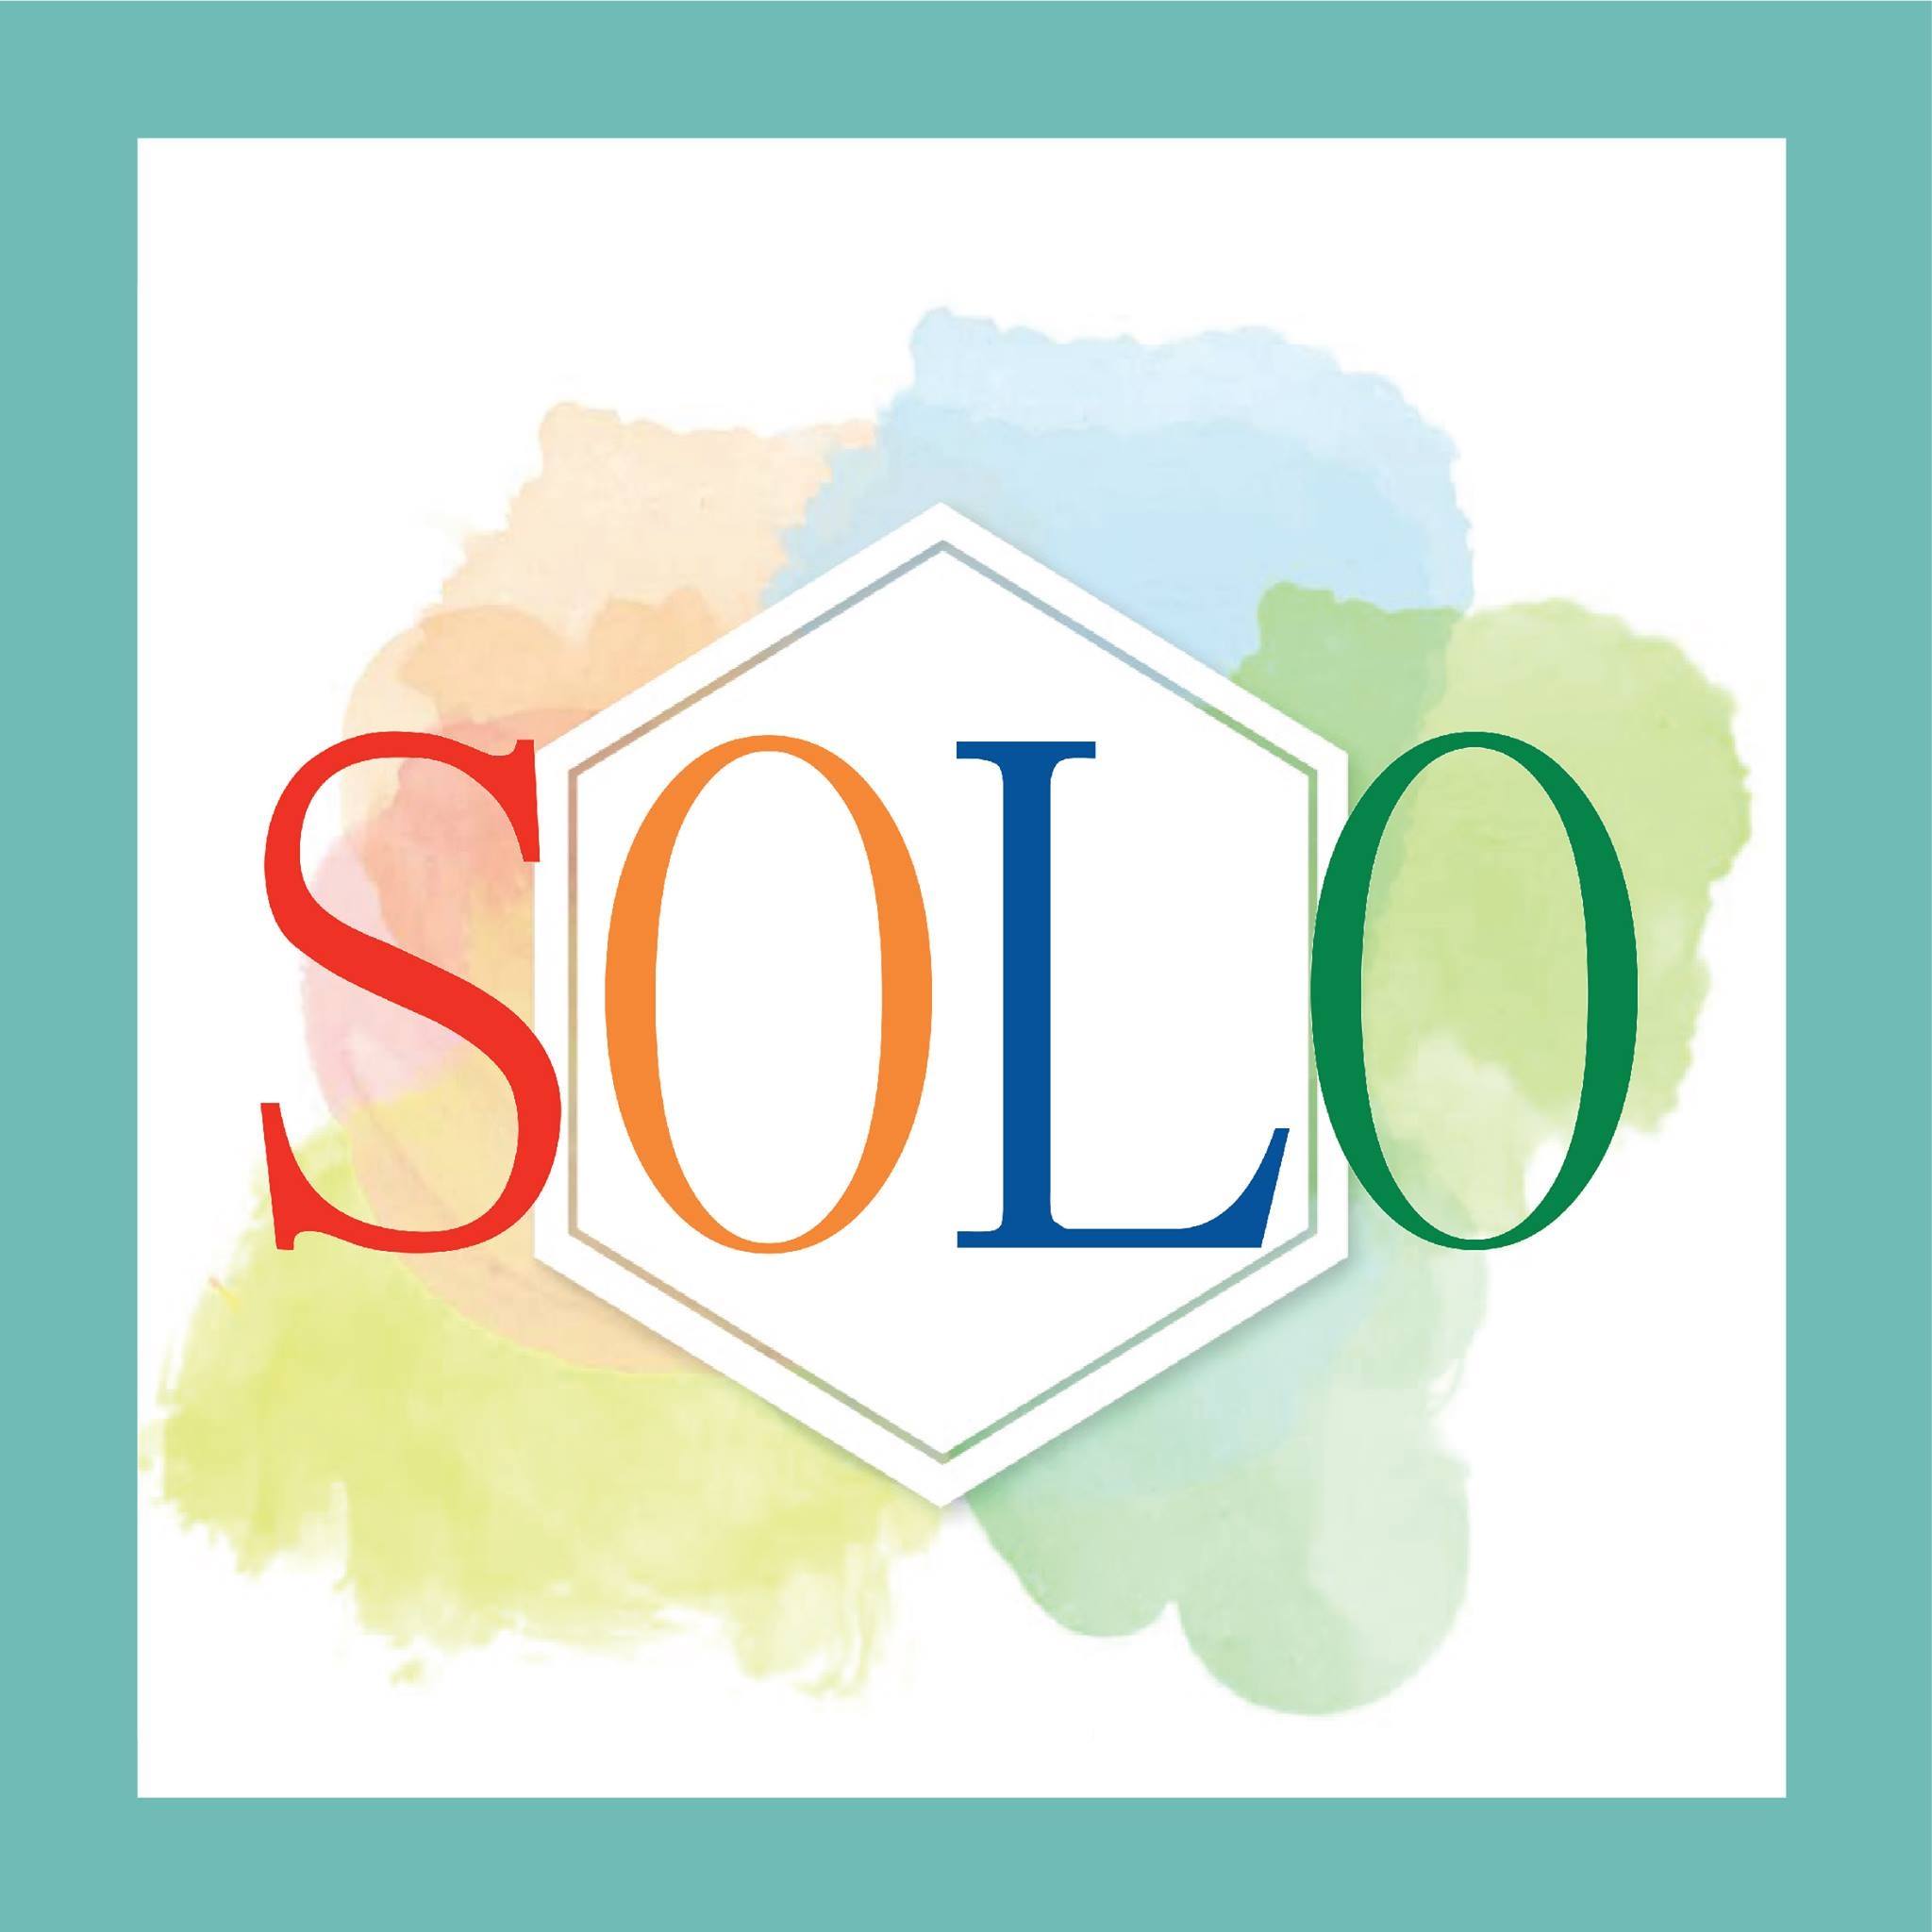 共用工作空間 Coworking Space Recommendation: SOLO HOURSPACE